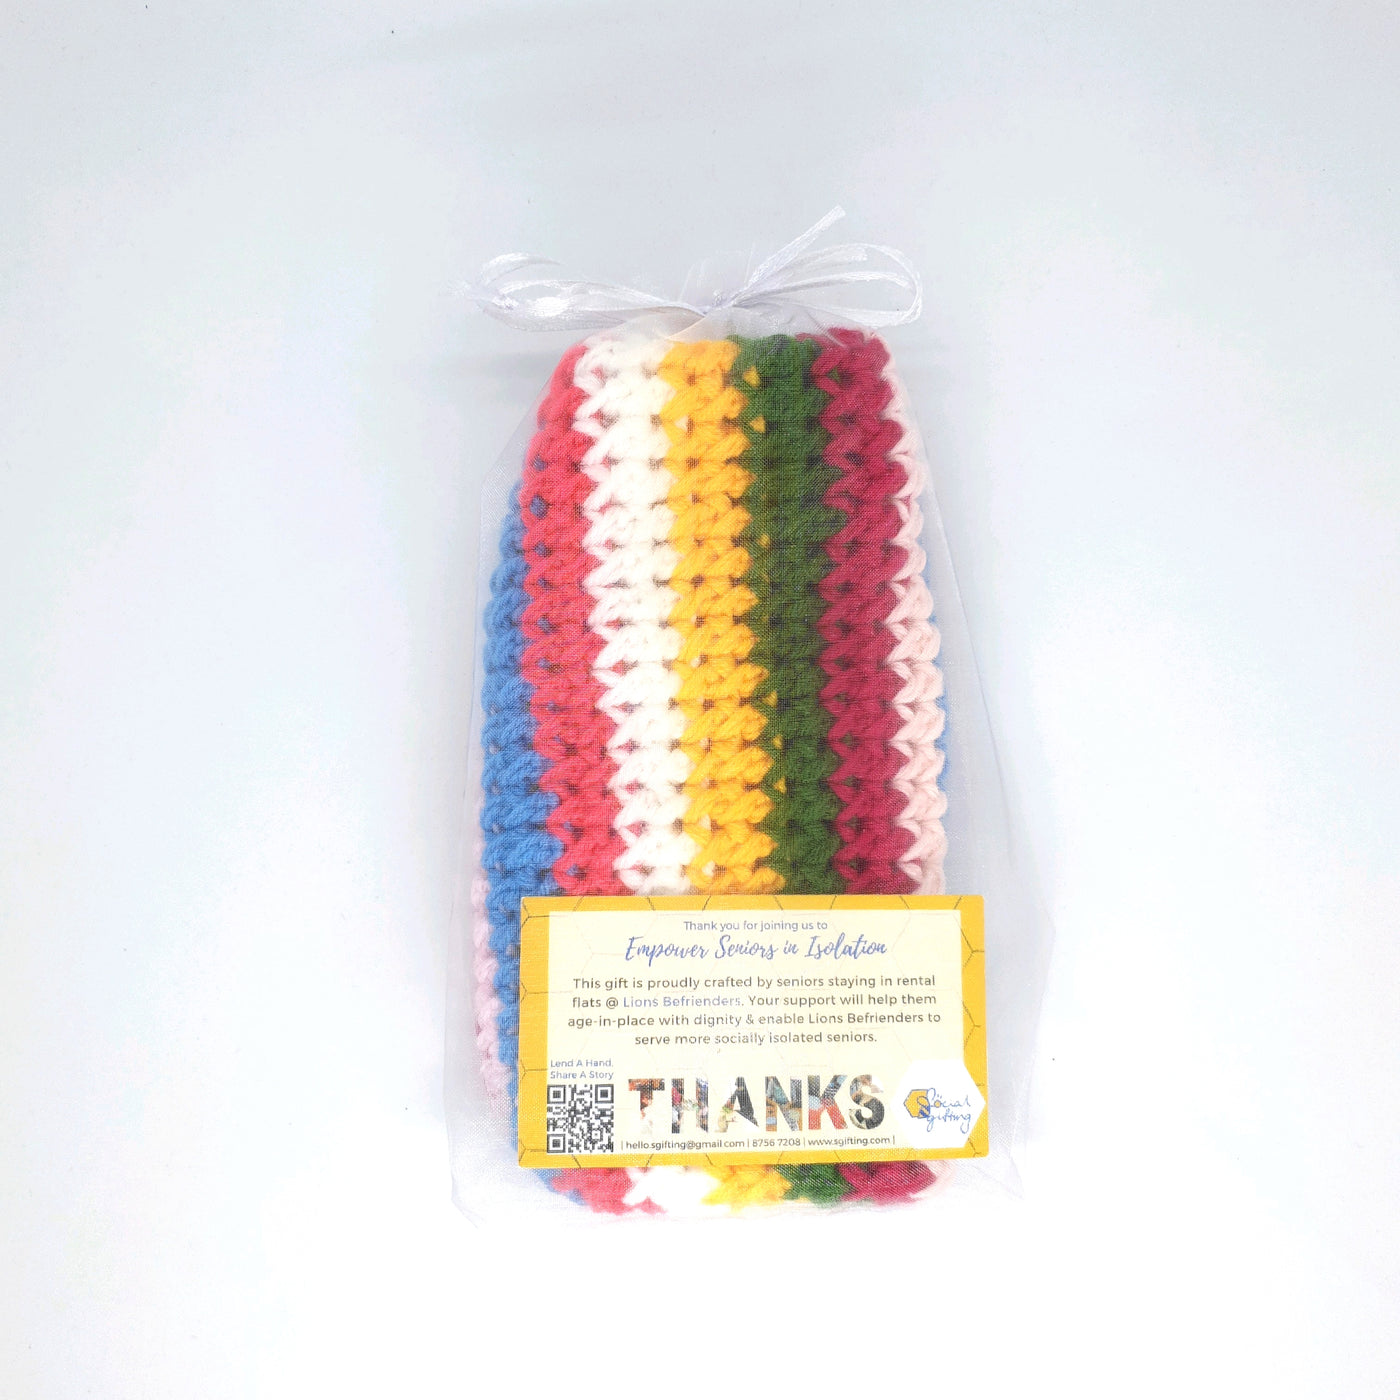 Hand Crocheted Sling Bag